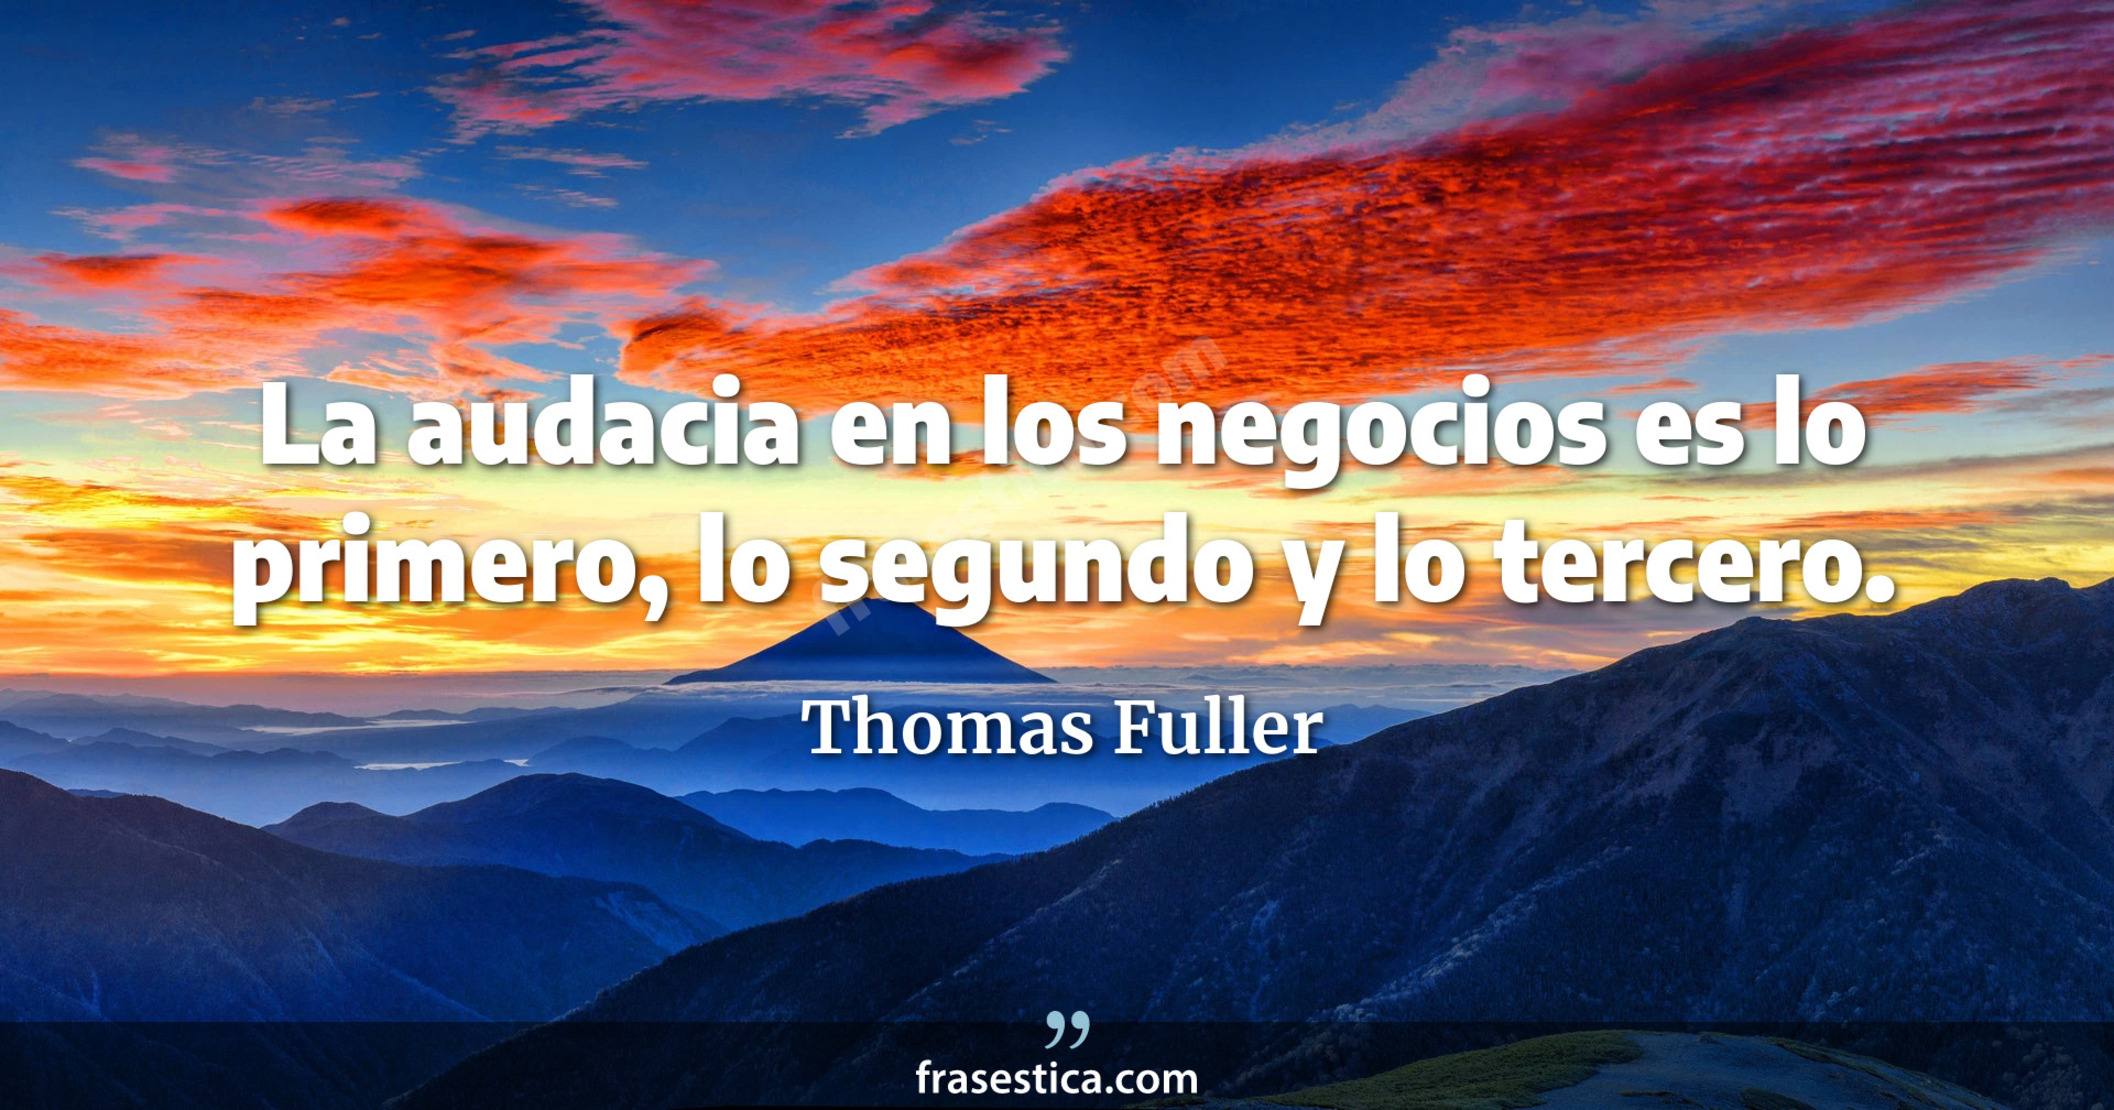 La audacia en los negocios es lo primero, lo segundo y lo tercero. - Thomas Fuller